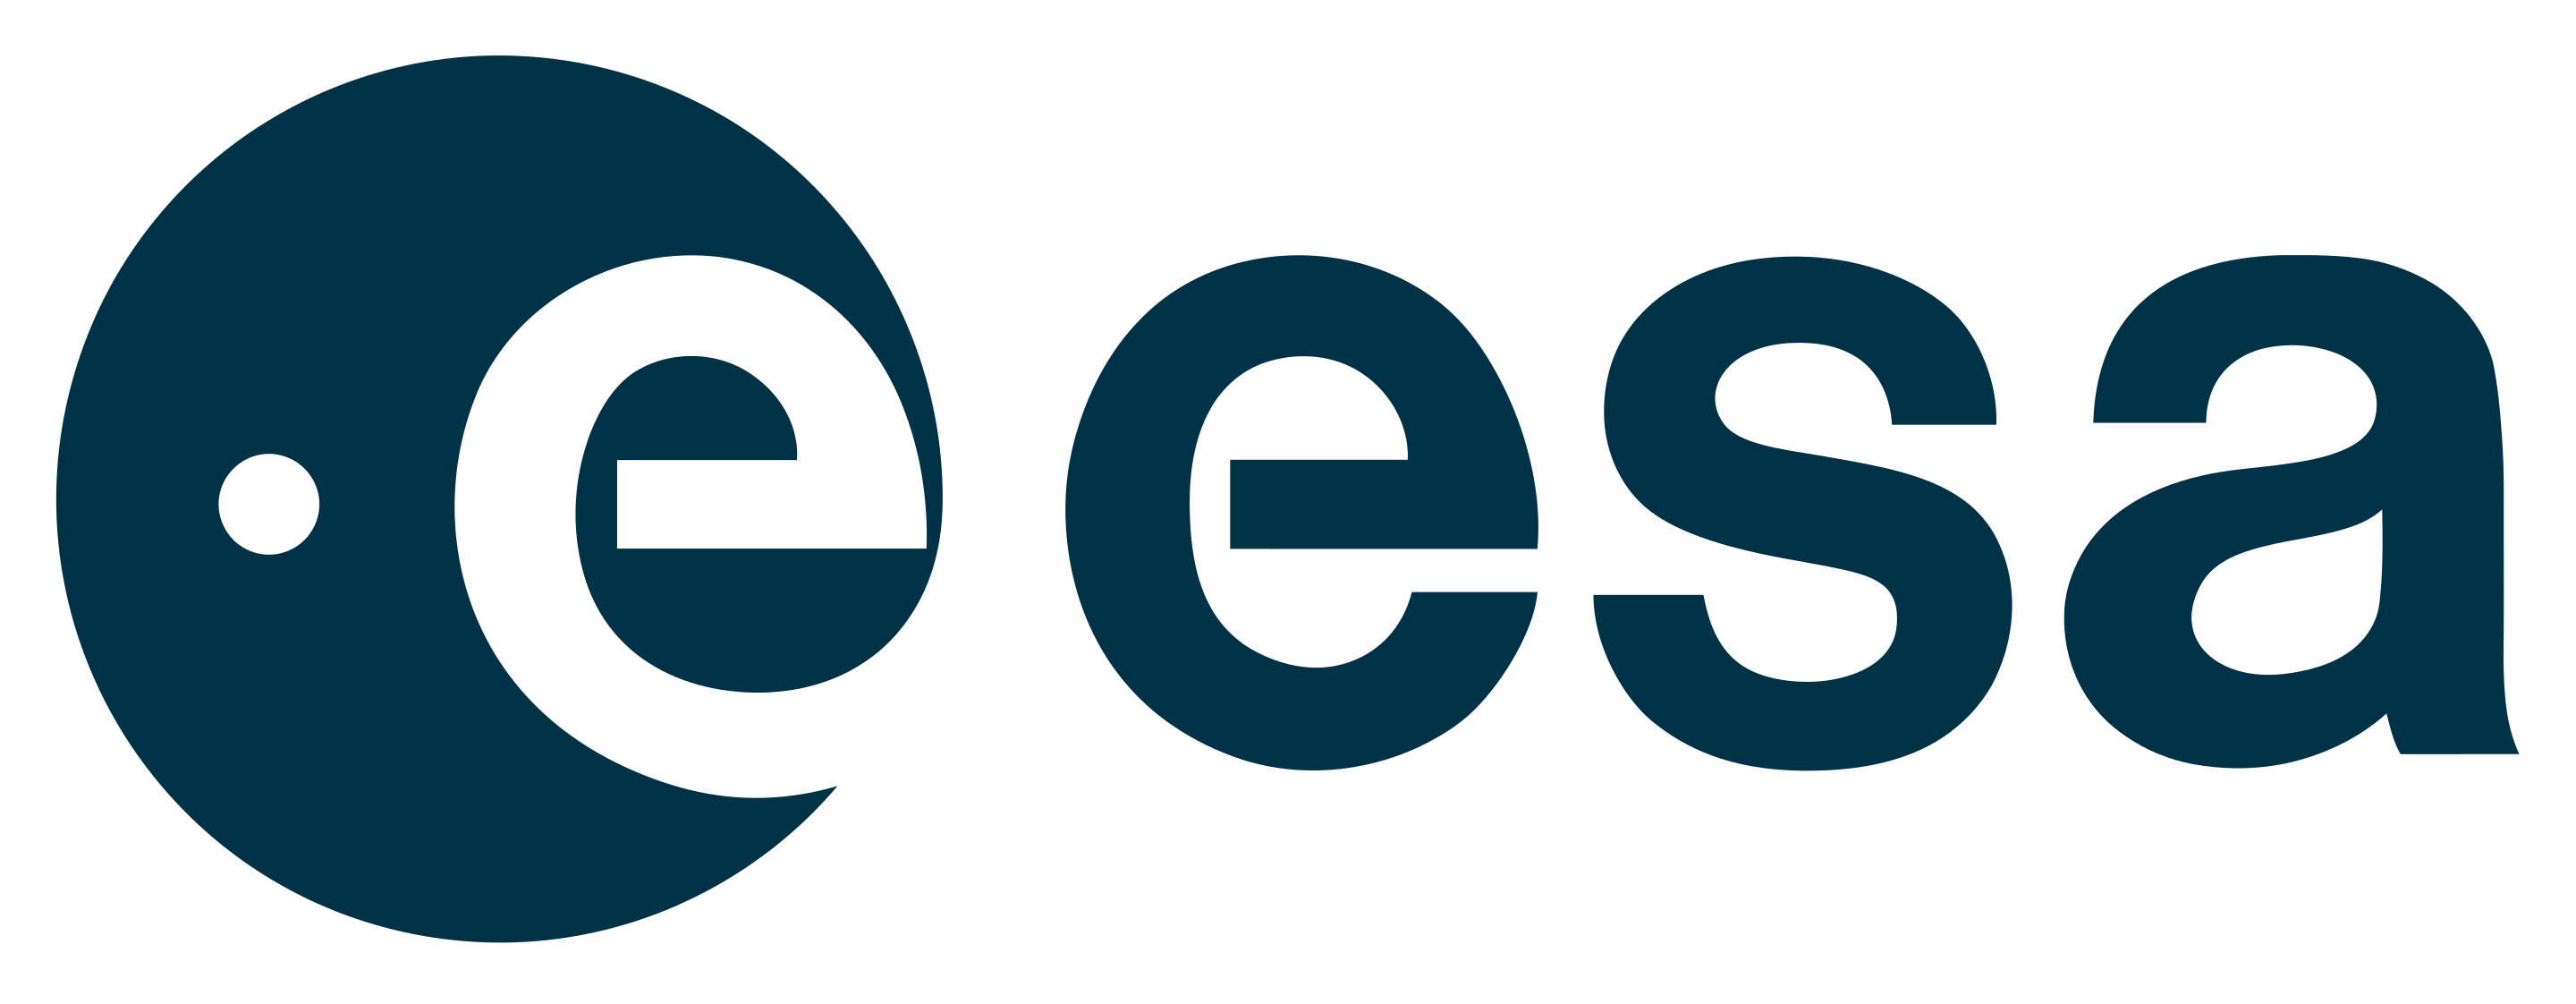 ESA - European Space Agency -  Европейское космическое агентство - Европейское управление космических исследований